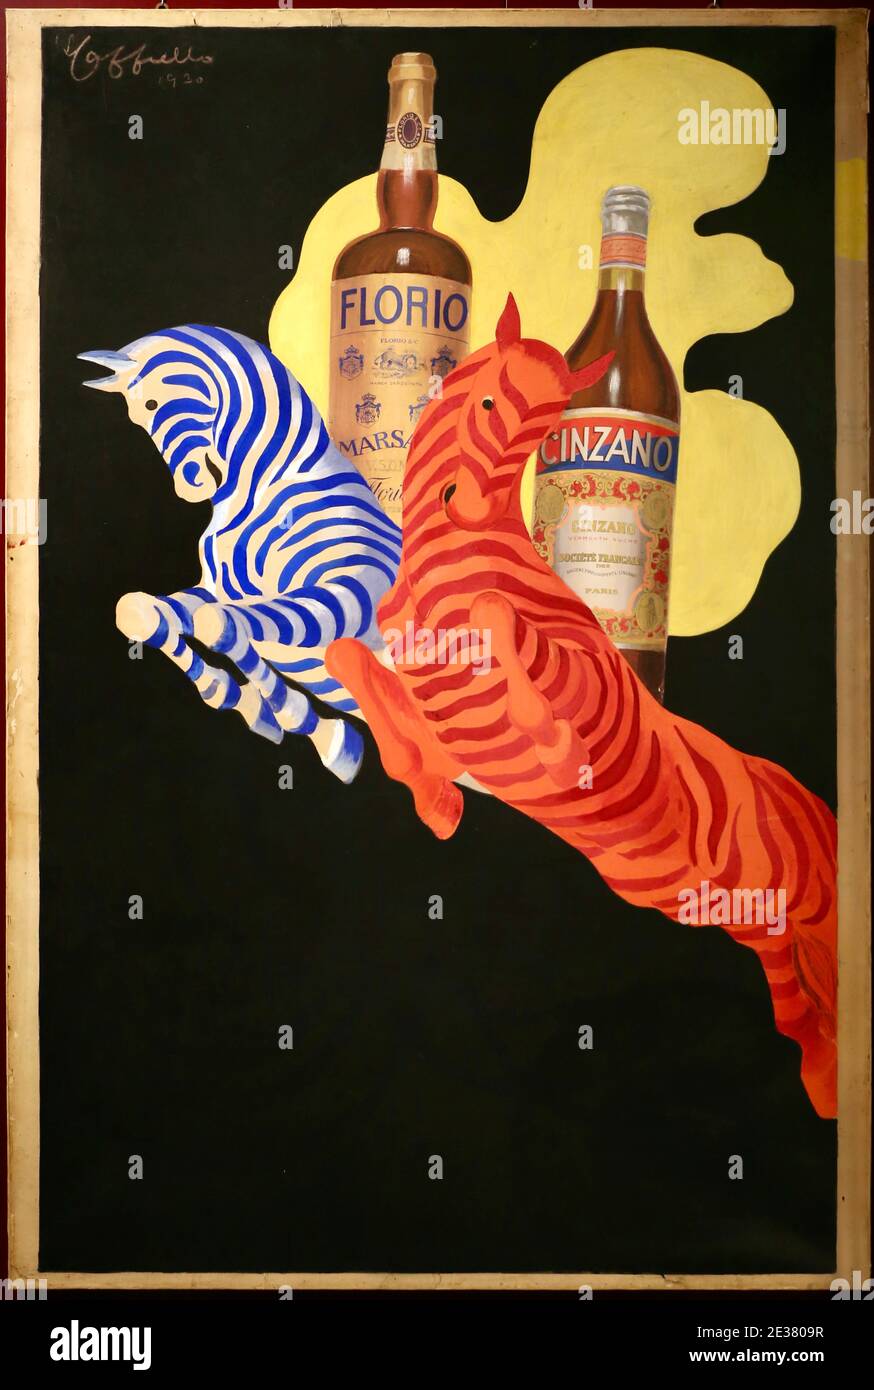 Affiche vintage pour Florio et Cinzano avec deux en-tête zèbres rouges et bleues devant les deux bouteilles od Florio et Cinzana 1930 Banque D'Images